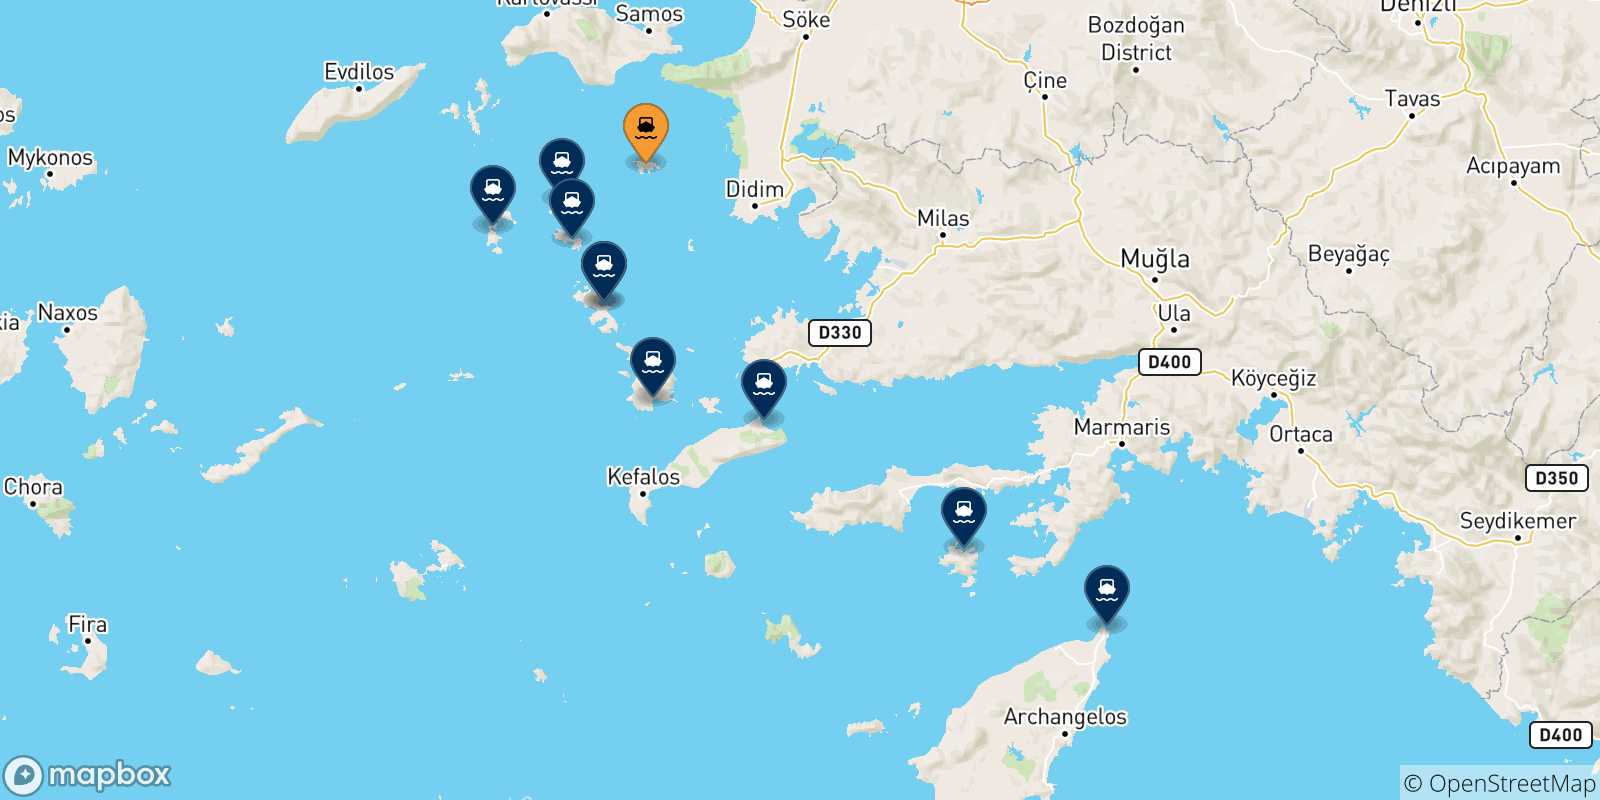 Mappa delle possibili rotte tra Agathonisi e le Isole Dodecaneso